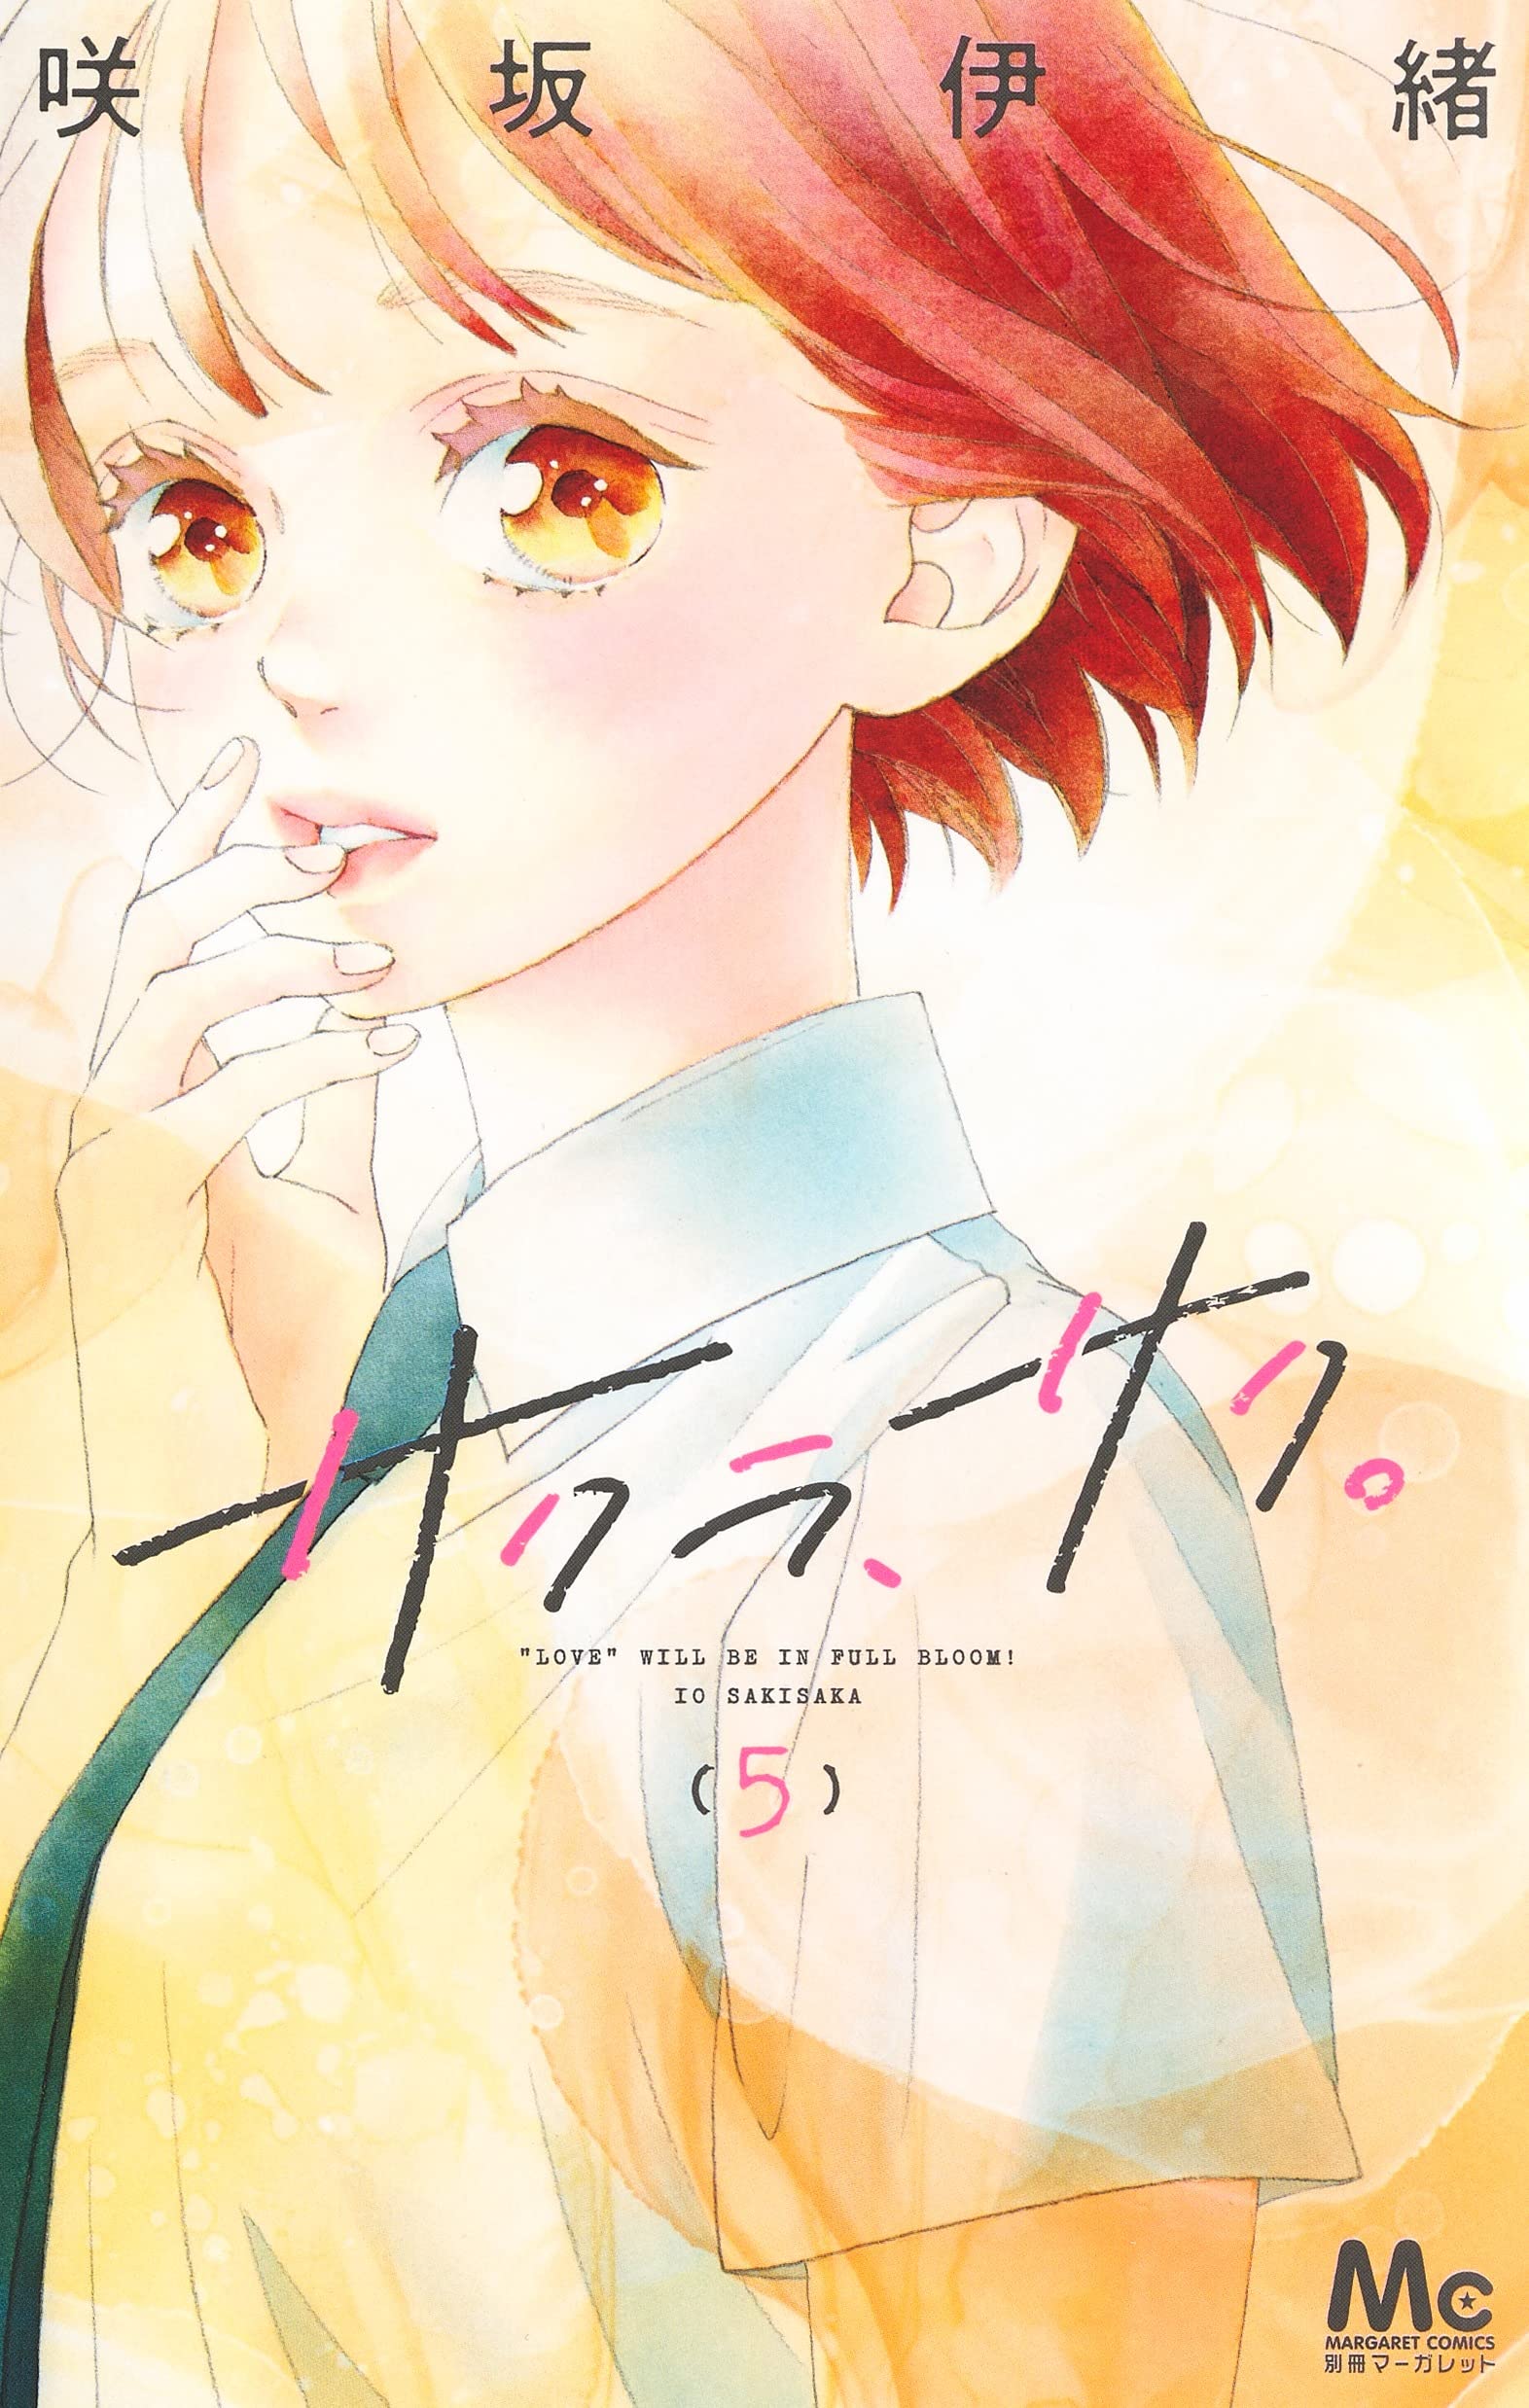 Volume 22 de Seirei Gensouki figura entre mais vendidos de Agosto